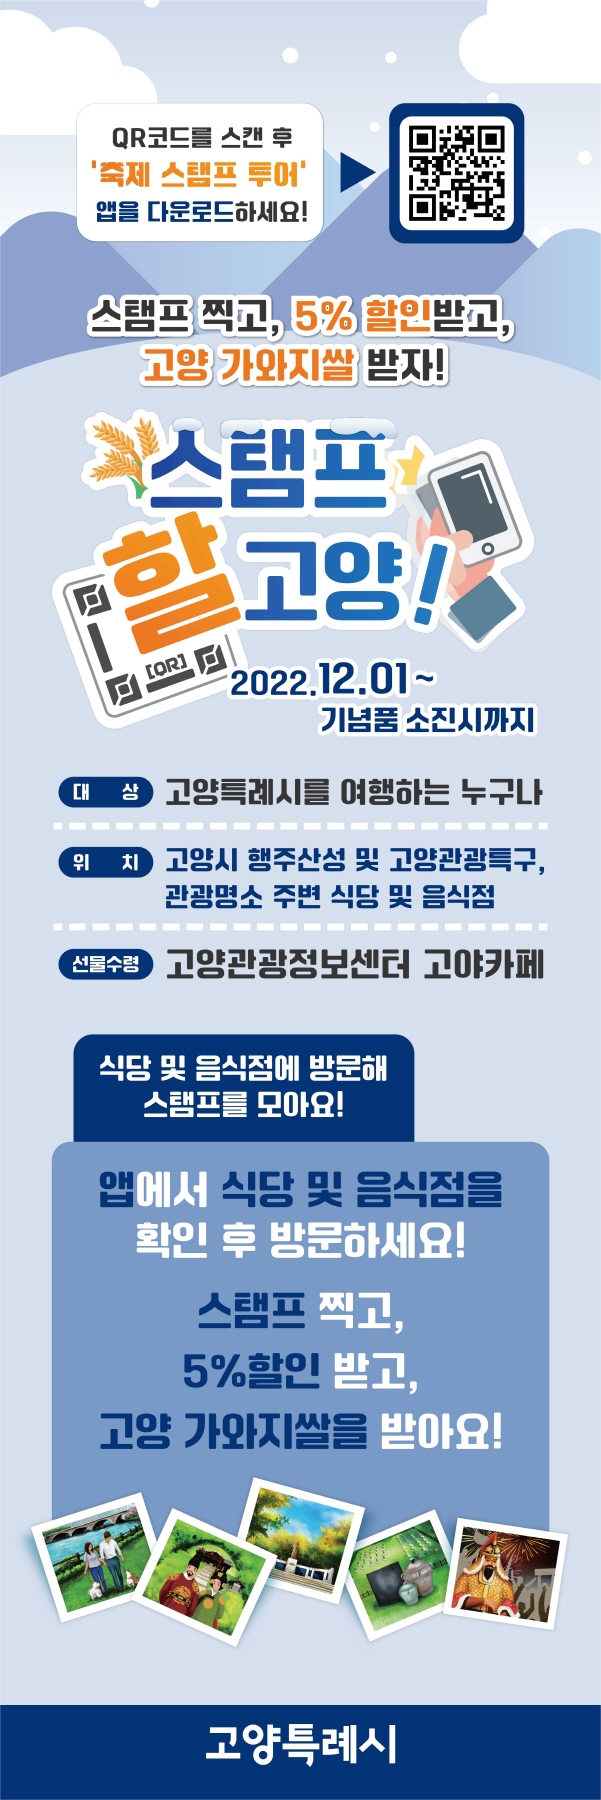 2023 신한카드 교보문고 할인카드 테마곡 보드 